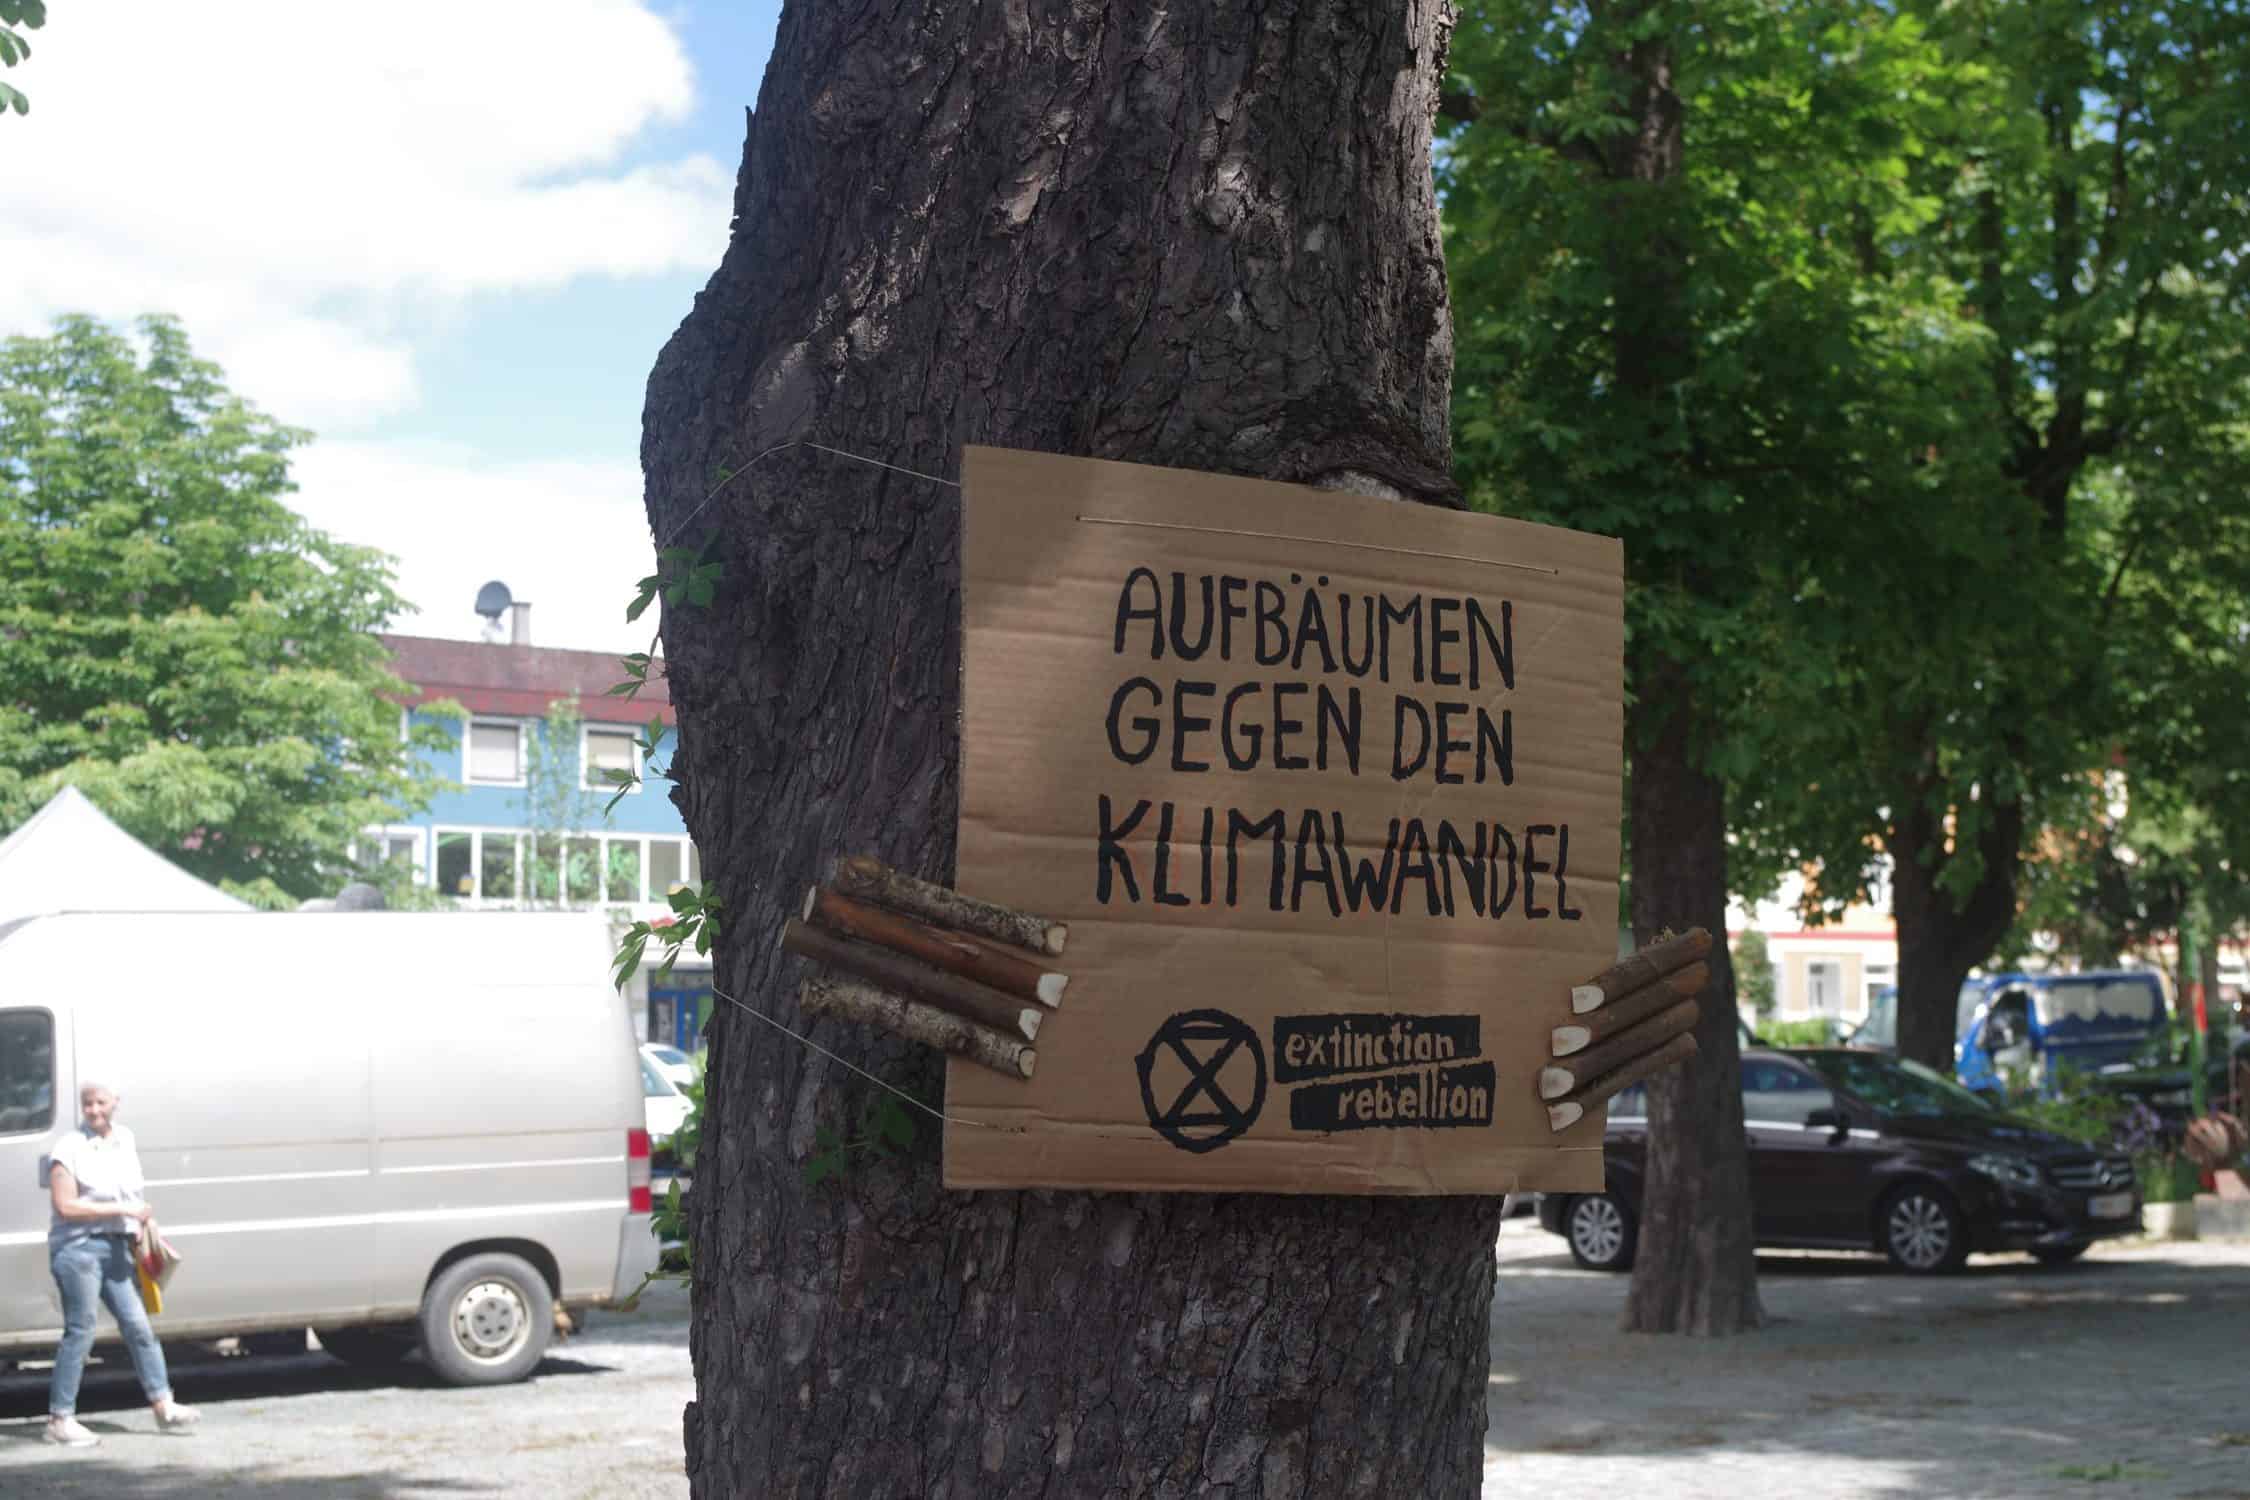 Baumdemonstrant "Aufbäumen gegen den Klimawandel"